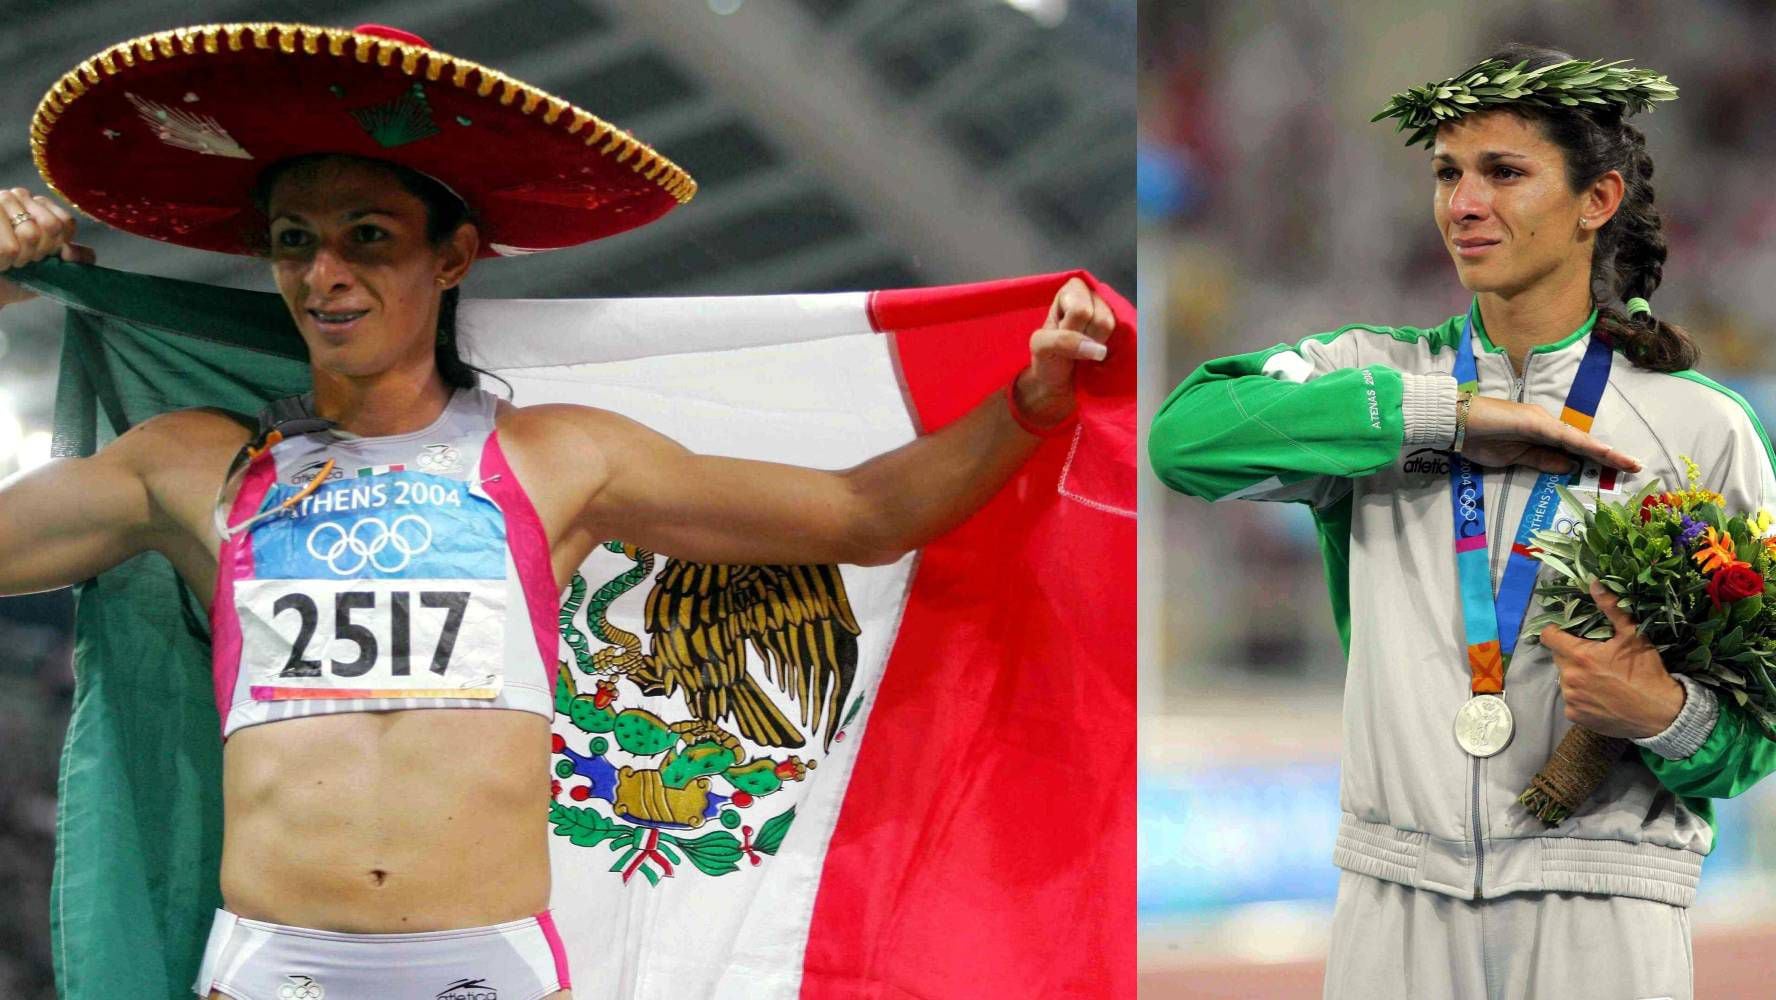 Mucho antes de ser titular de la Conade, Ana Guevara fue un atleta exitosa en las pistas y participó en Juegos Olímpicos de 2004, donde ganó plata.. (Foto: Mexsport).